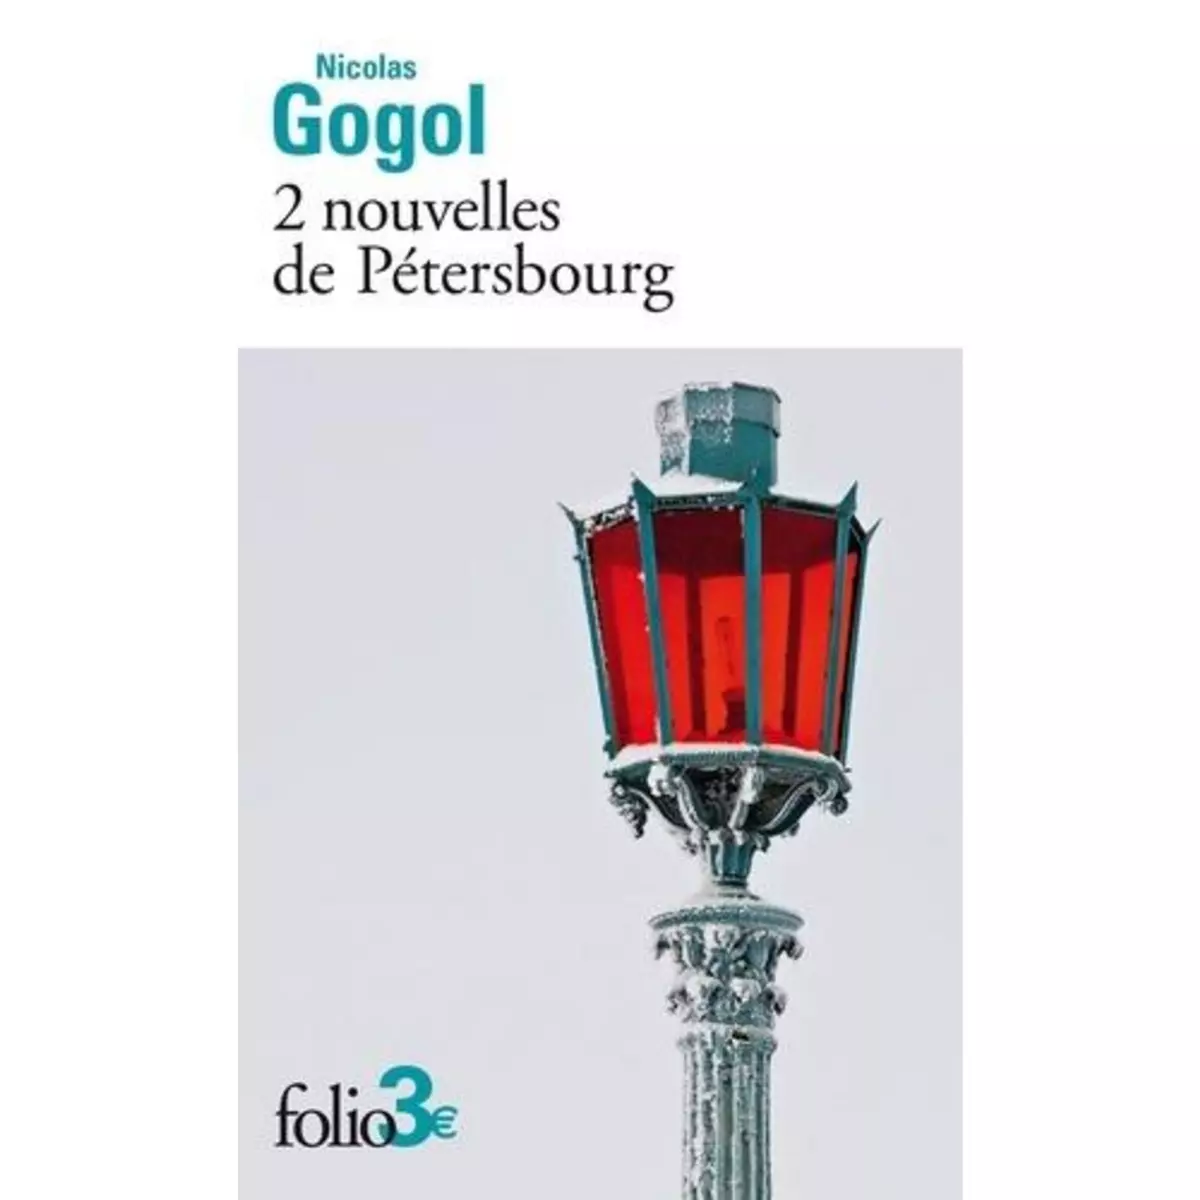  2 NOUVELLES DE PETERSBOURG, Gogol Nicolas